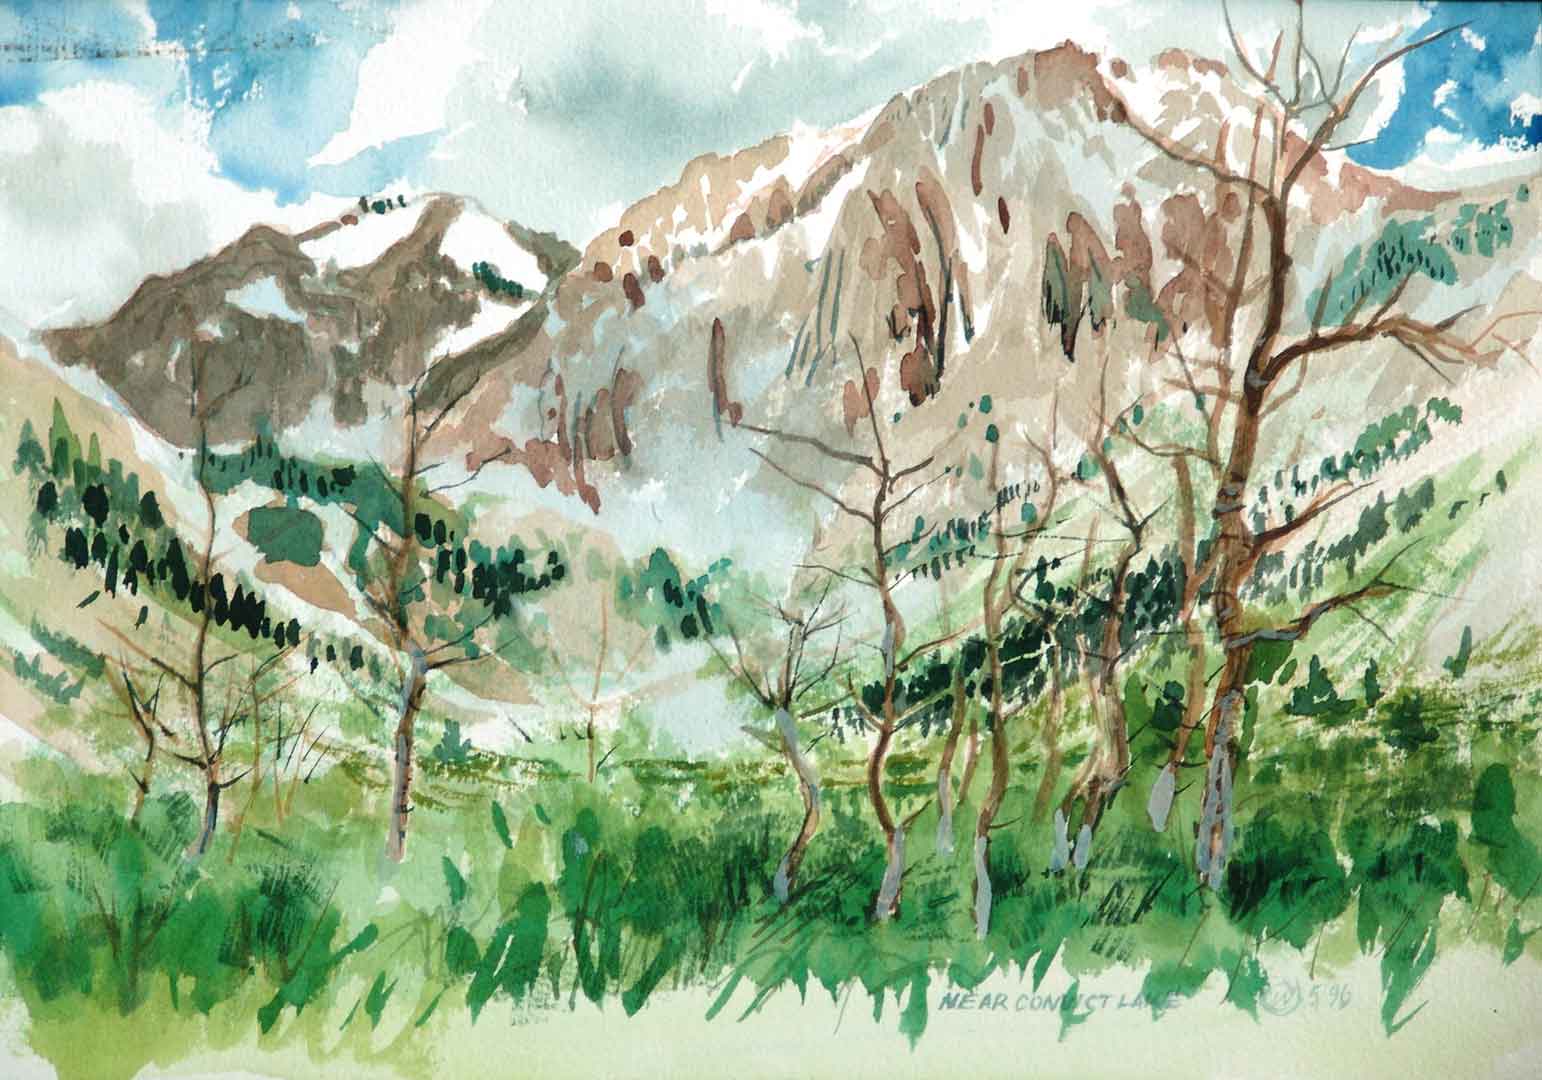 Near Convict Lake, Watercolor on paper, 11 x 9